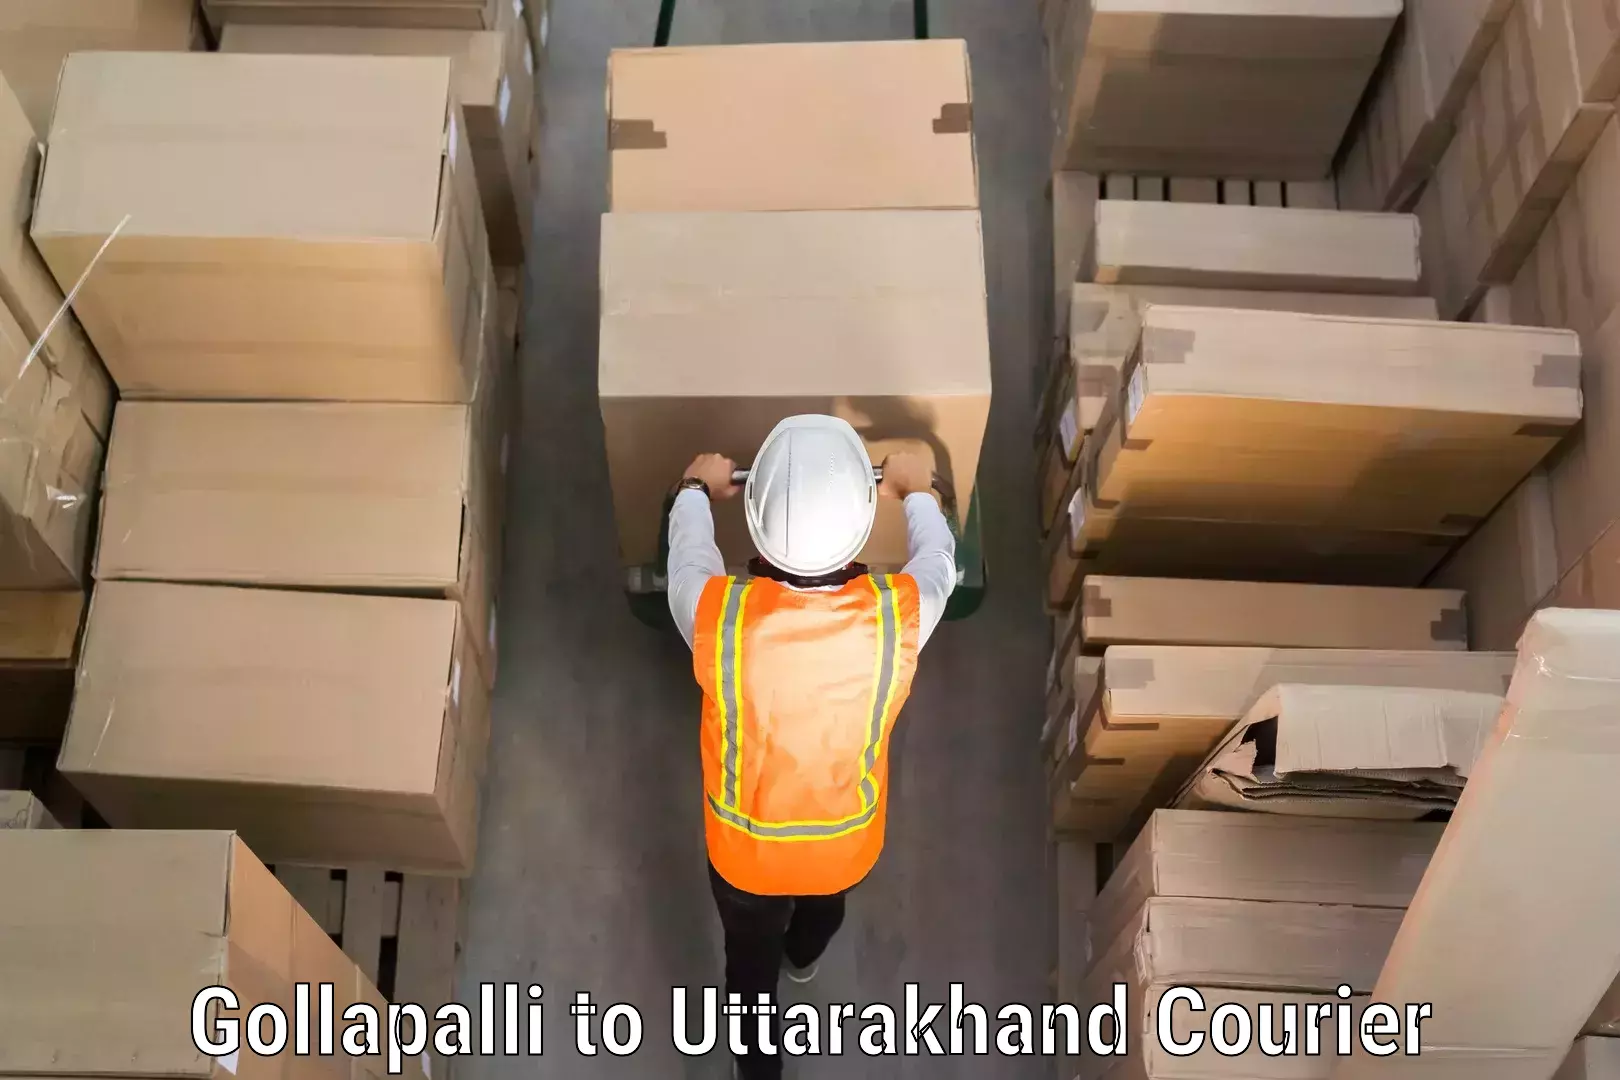 Global baggage shipping in Gollapalli to Pauri